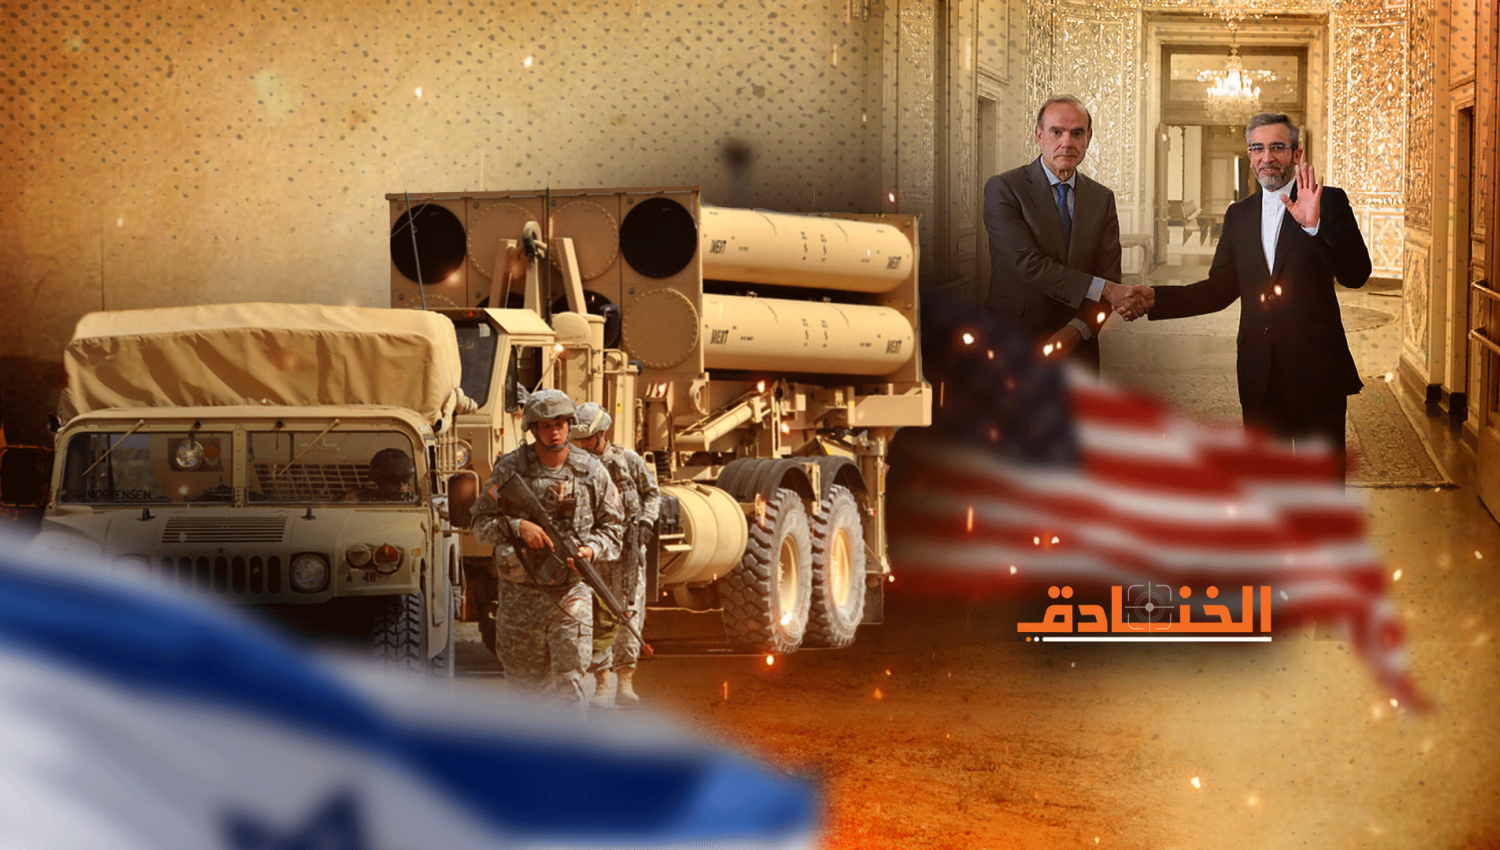 إسرائيل اليوم: عرض أمريكي لإسرائيل مقابل الاتفاق النووي!